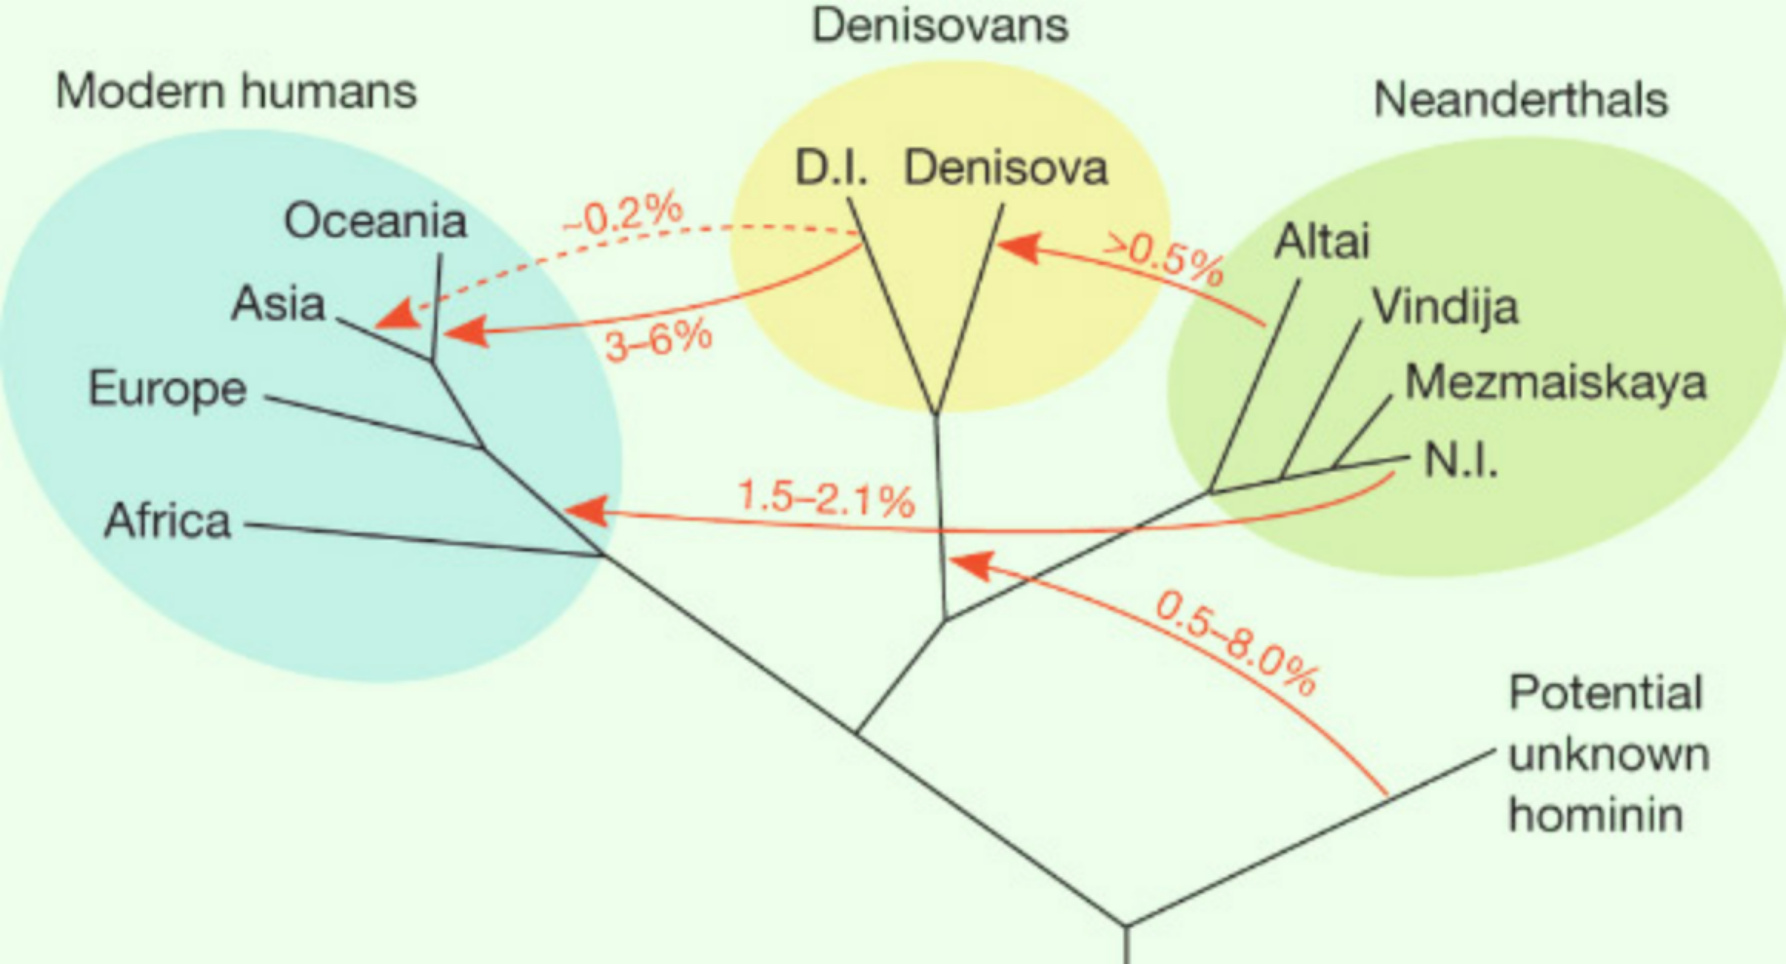 Arborele genealogic al primilor oameni care ar fi trăit în Eurasia acum mai bine de 50,000 de ani.